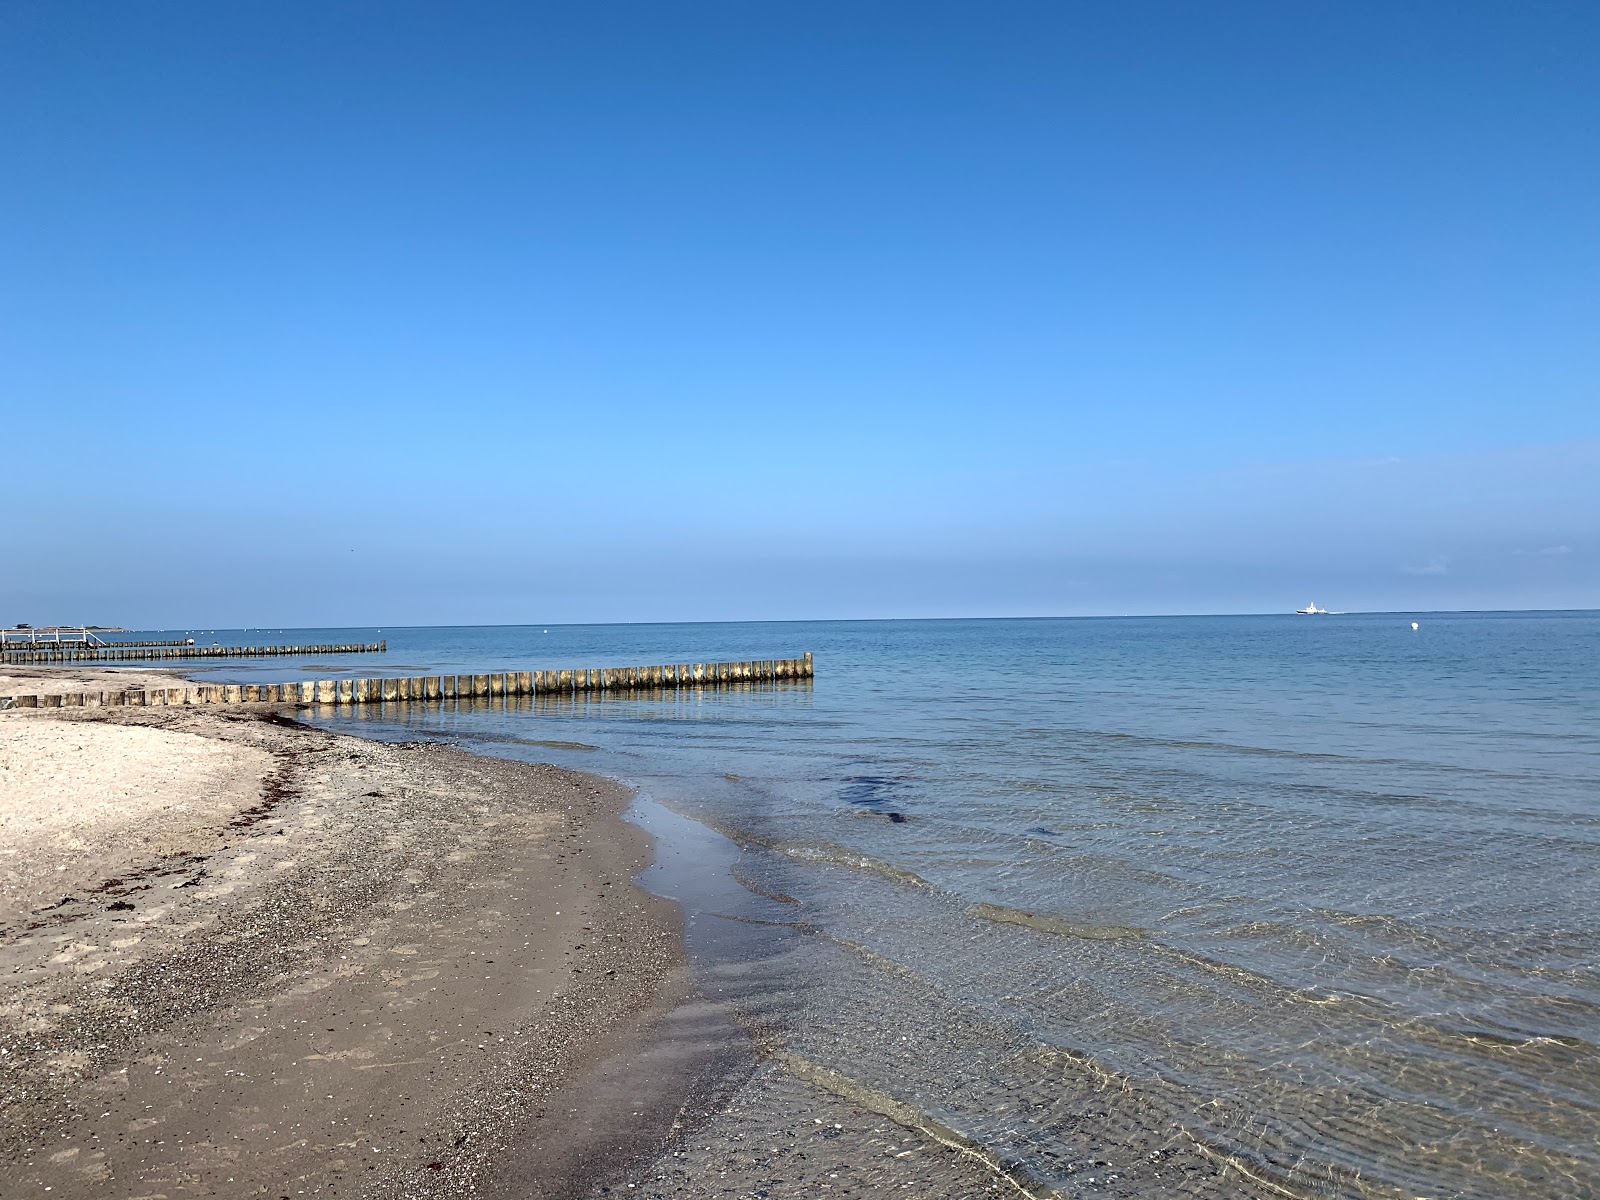 Fotografija Heiligen Hafen Strand nahaja se v naravnem okolju